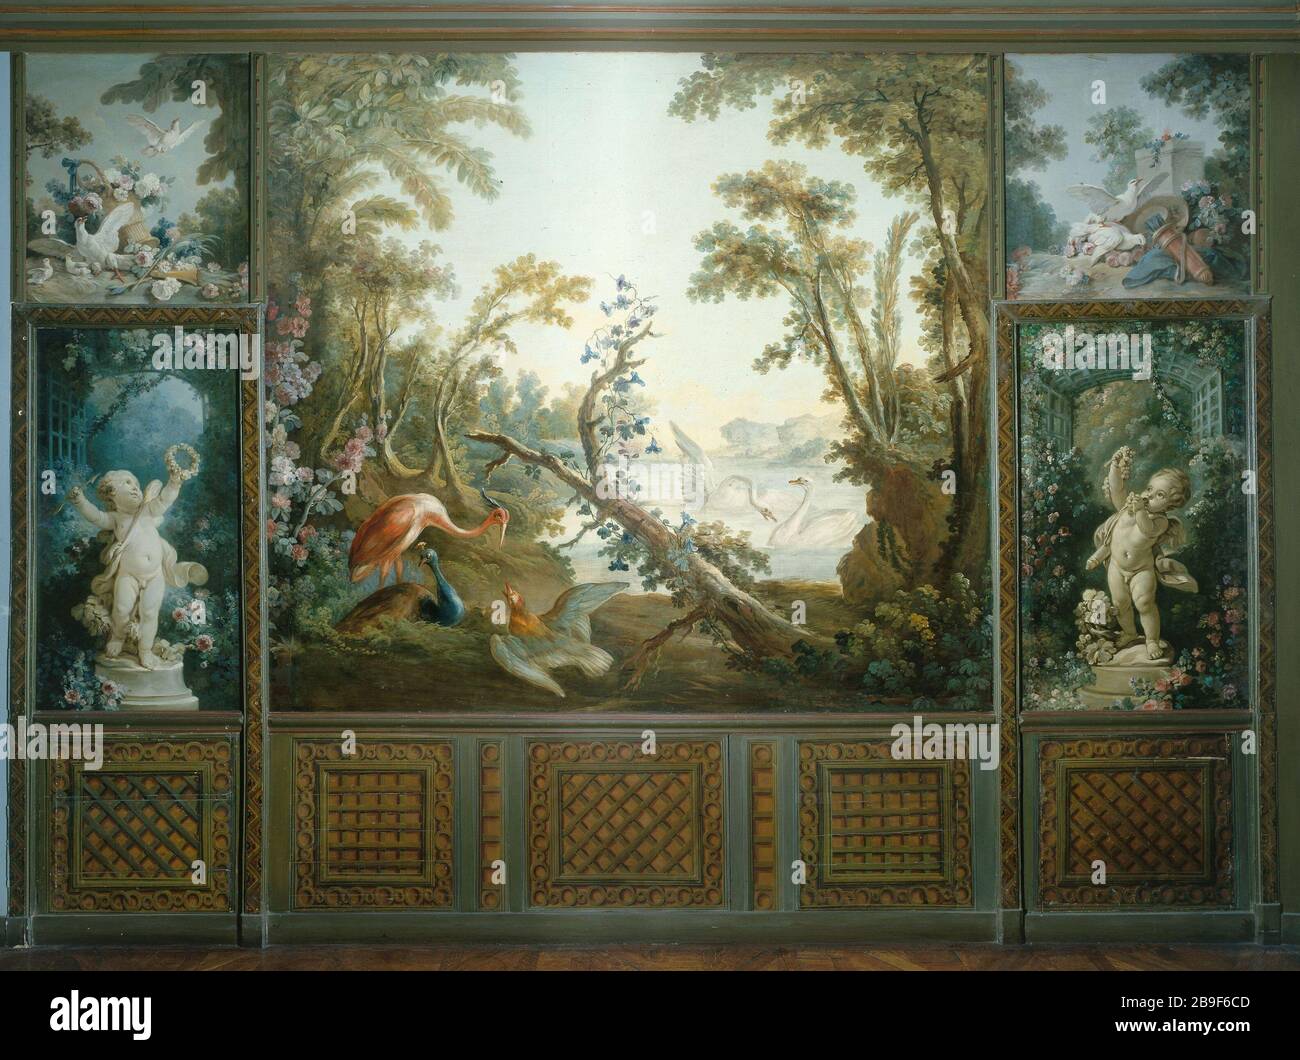 J.B. HUET, JH Fragonard - PANELS DEMARTEAU SALON Jean-Baptiste Huet  (1745-1811), Jean-Honoré Fragonard (1732-1806), François Boucher  (1703-1770). Panneaux du salon Demarteau : "Paysage aux cygnes", "Le  Sacrifice à l'autel de l'Amour", "Eclosion